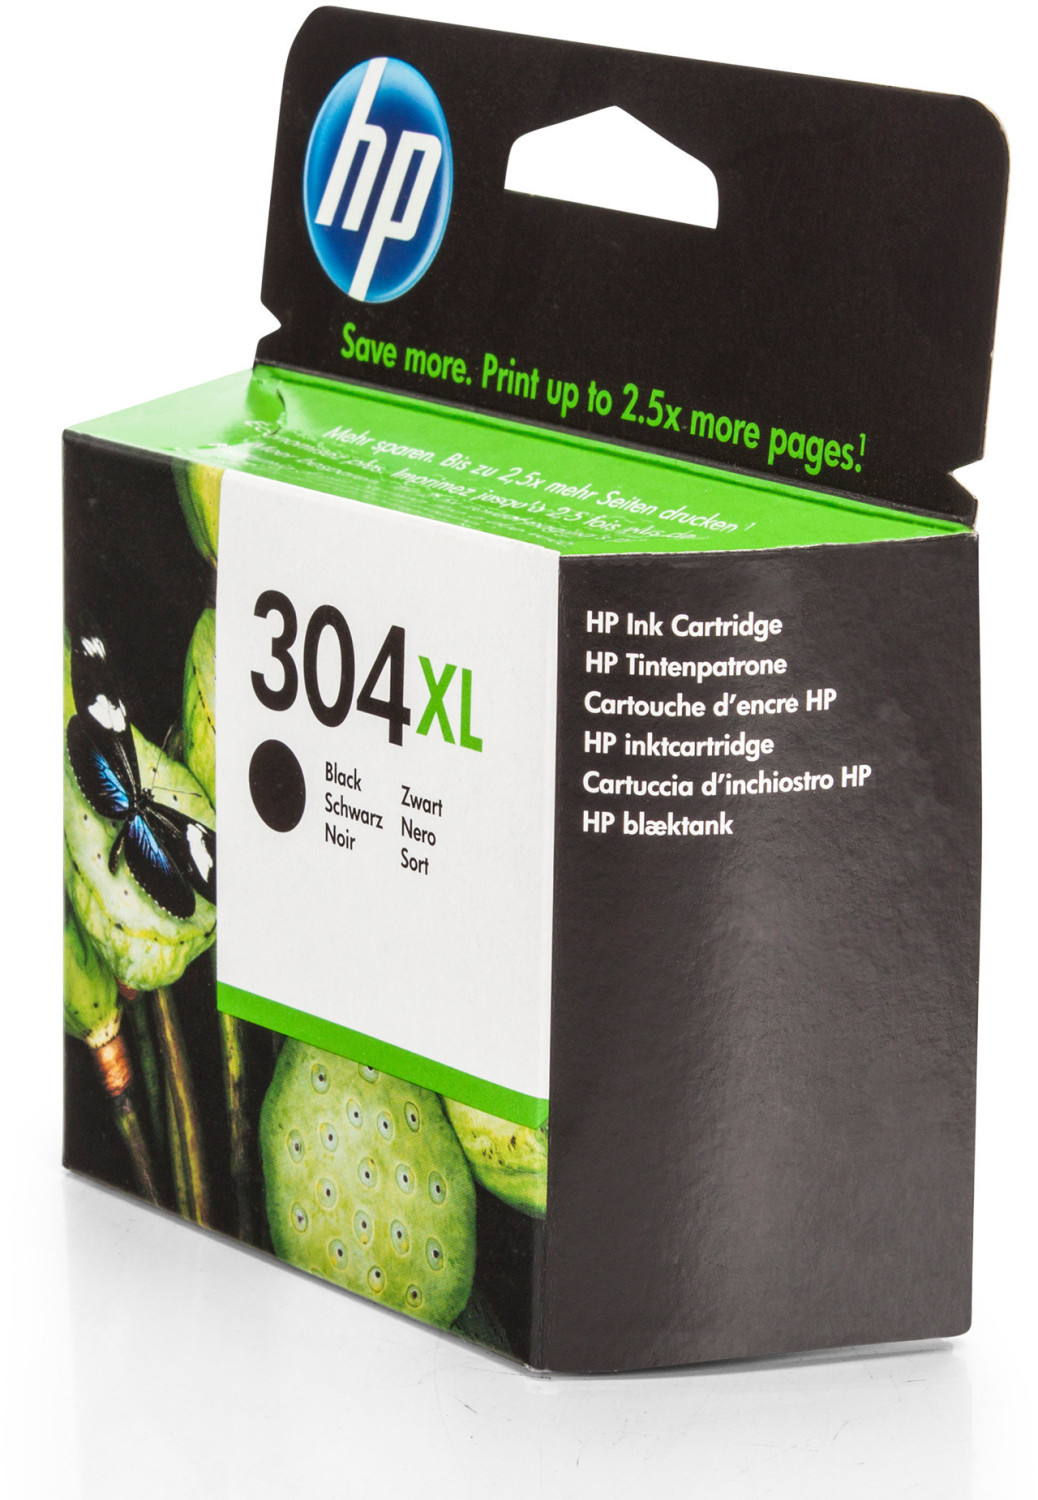 Objectif - Cartouche HP 304XL noir Prix : 24.90€ Egalement disponible : HP  304 noir HP 304 couleur HP 304XL couleur HP 304 duo pack (noir et couleur)